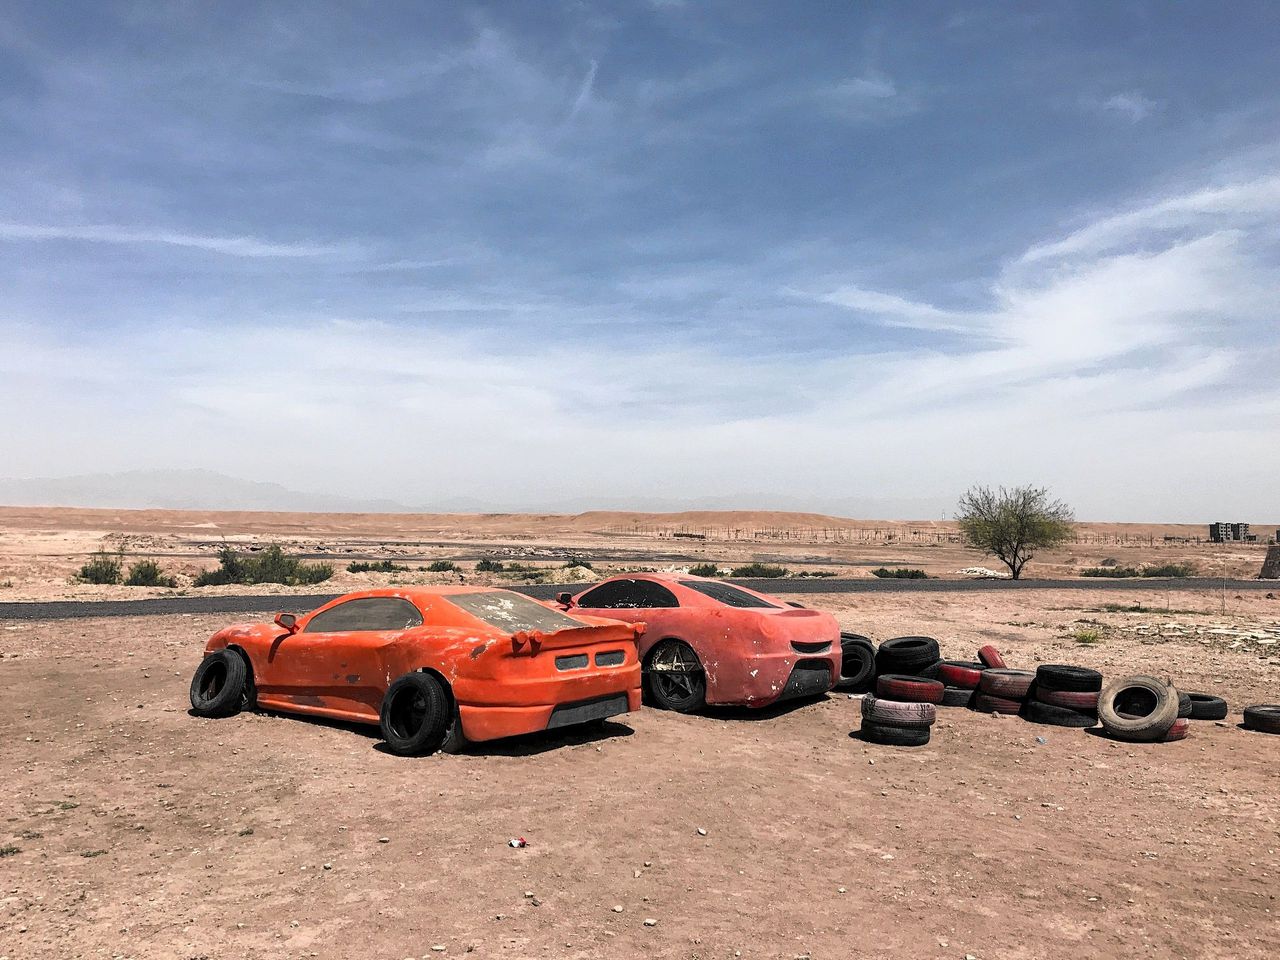 Bij de Atlas Film Studio’s in Ouarzazate, Marokko staan tal van decors die herinneringen oproepen aan grote producties. De wagens werden gebruikt bij opnames van Top Gear.